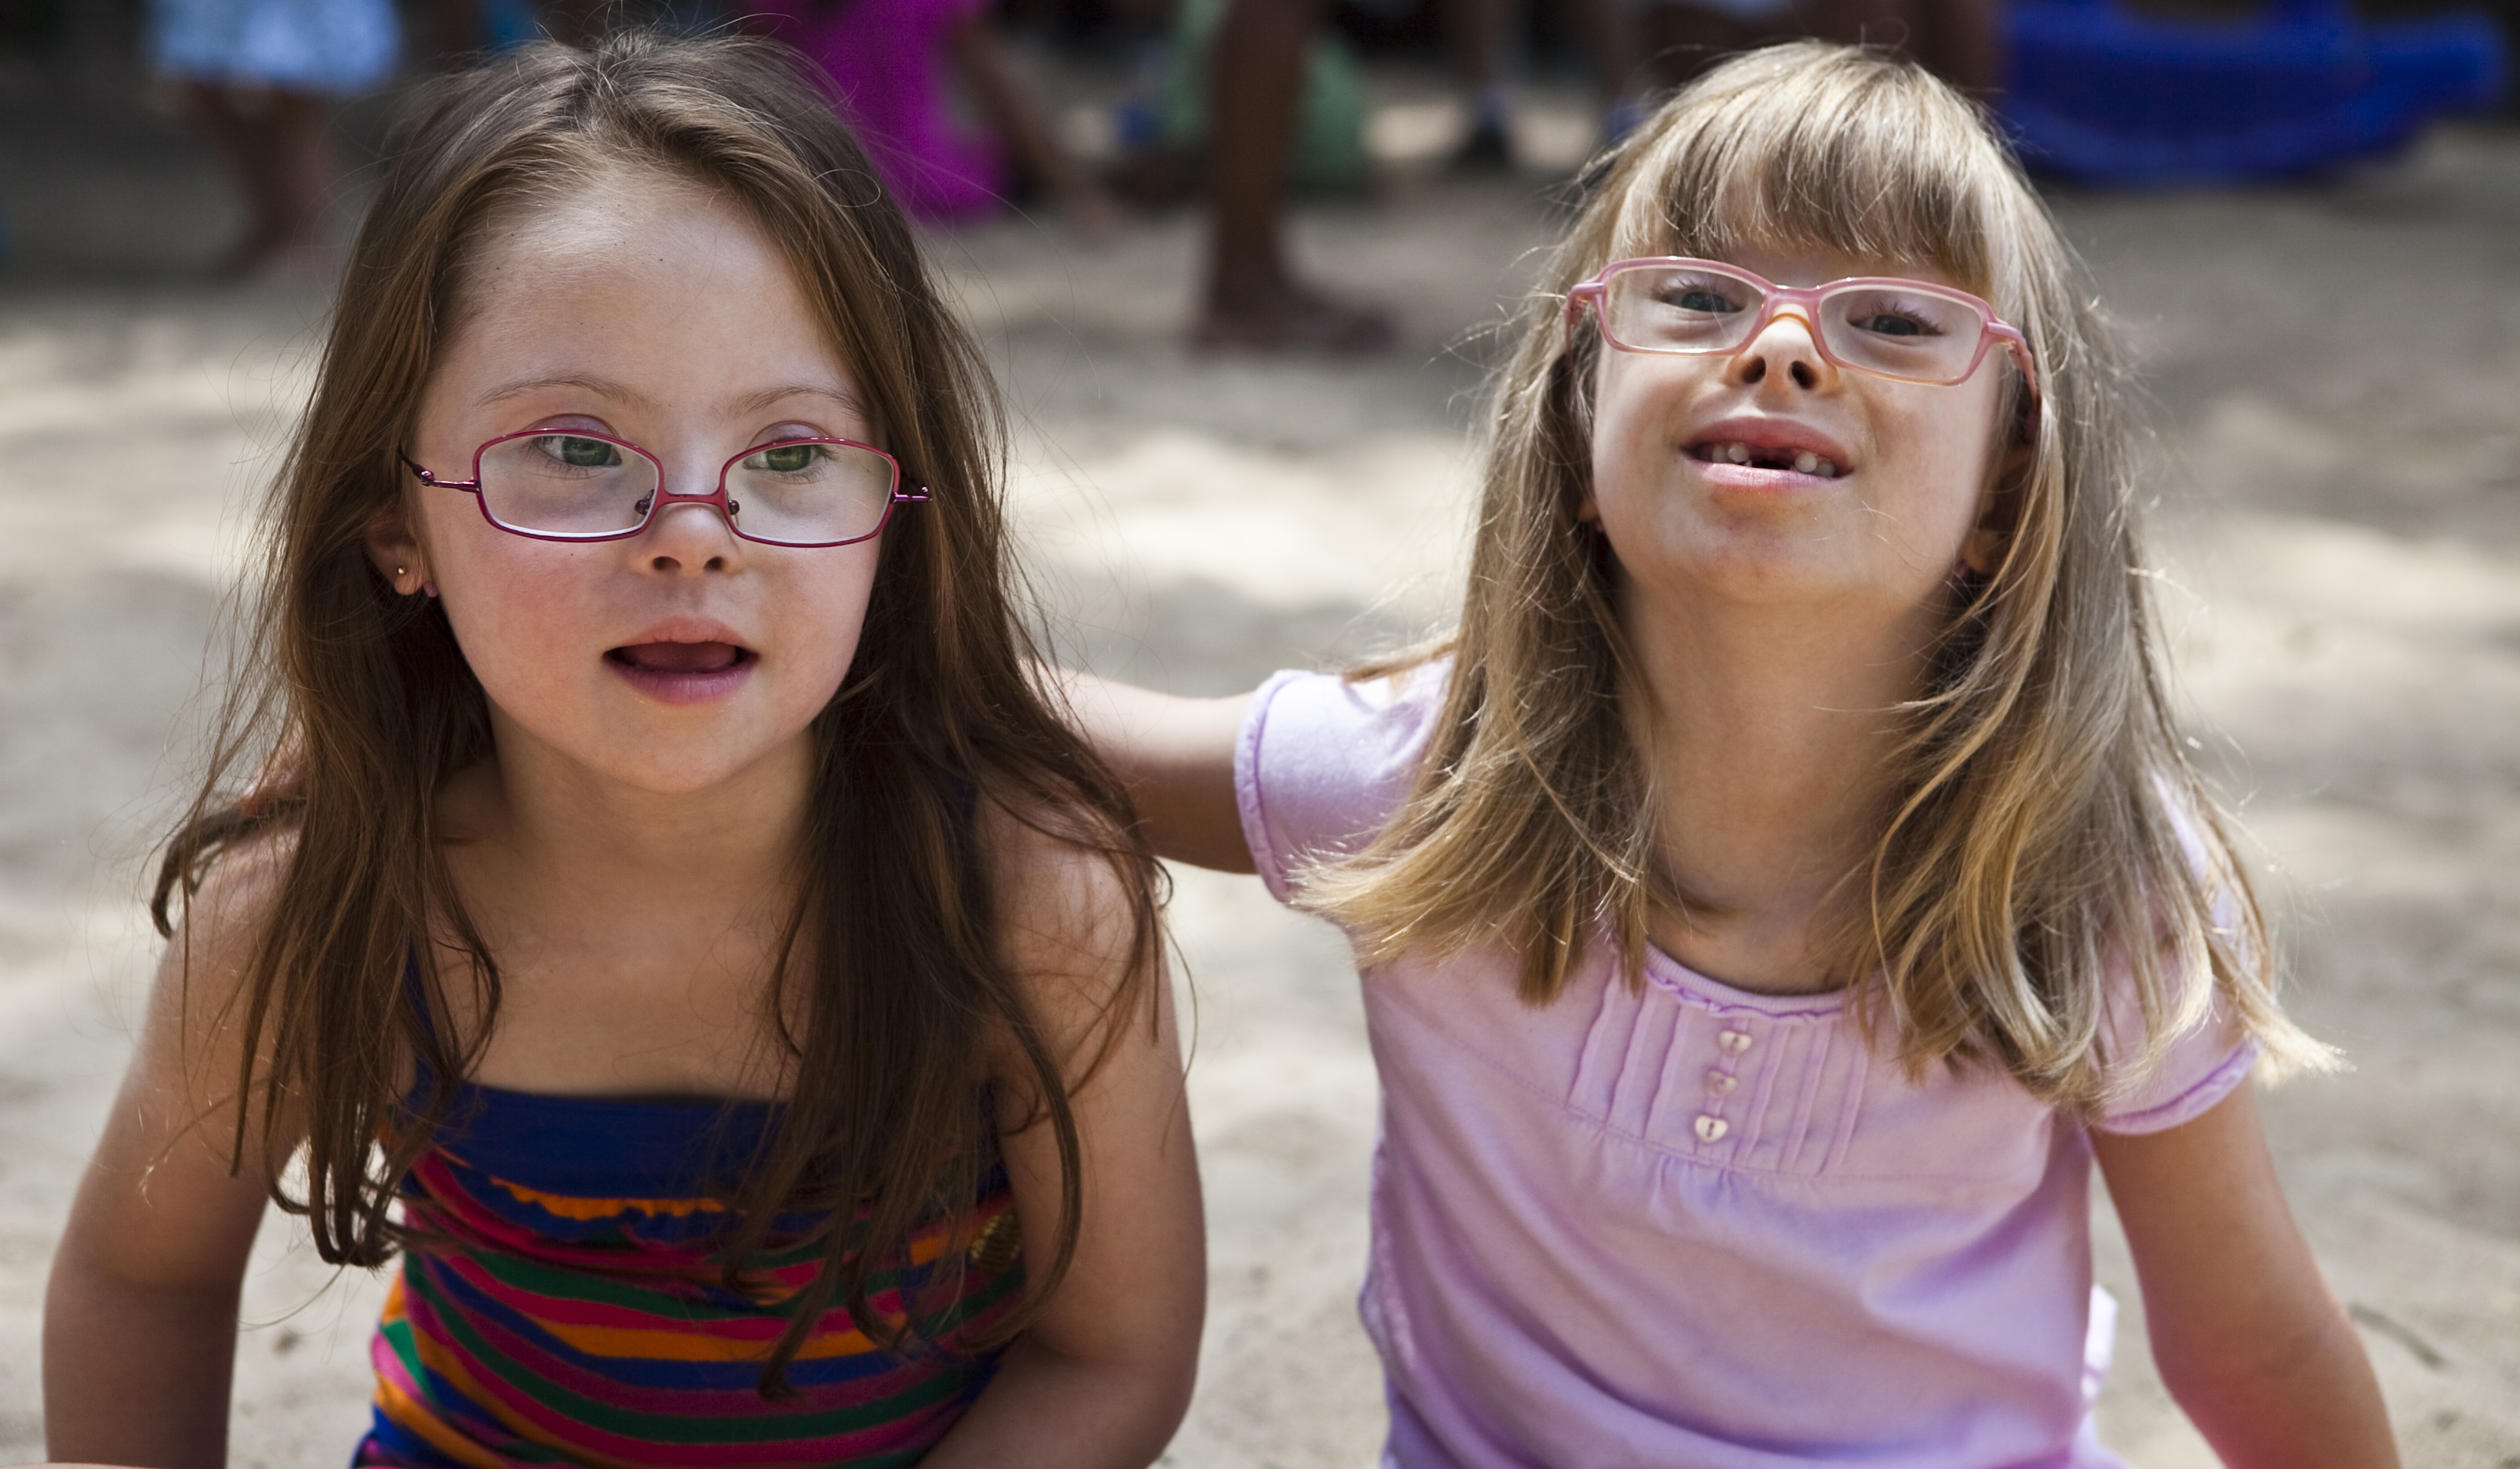 Duas garotas com síndrome de Down estão sentadas de frente para a foto. A que está do lado esquerdo olha levemente para o lado, enquanto a que está do lado direito olha para frente e apoia o braço nas costas da amiga.